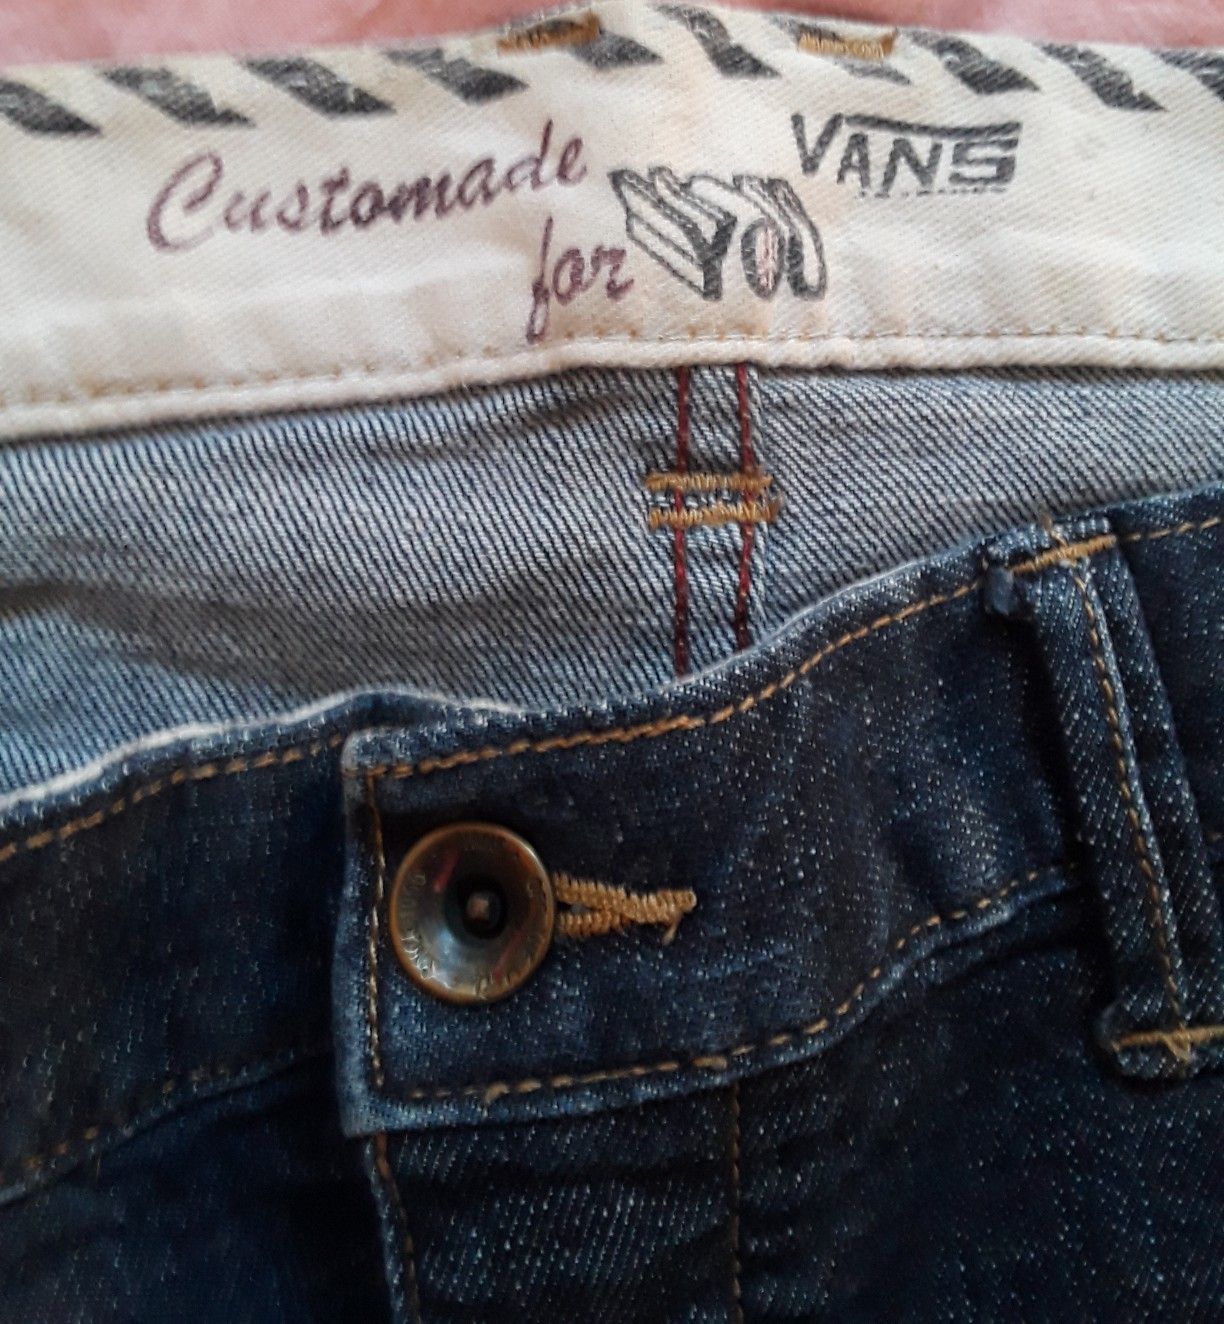 Van's jeans